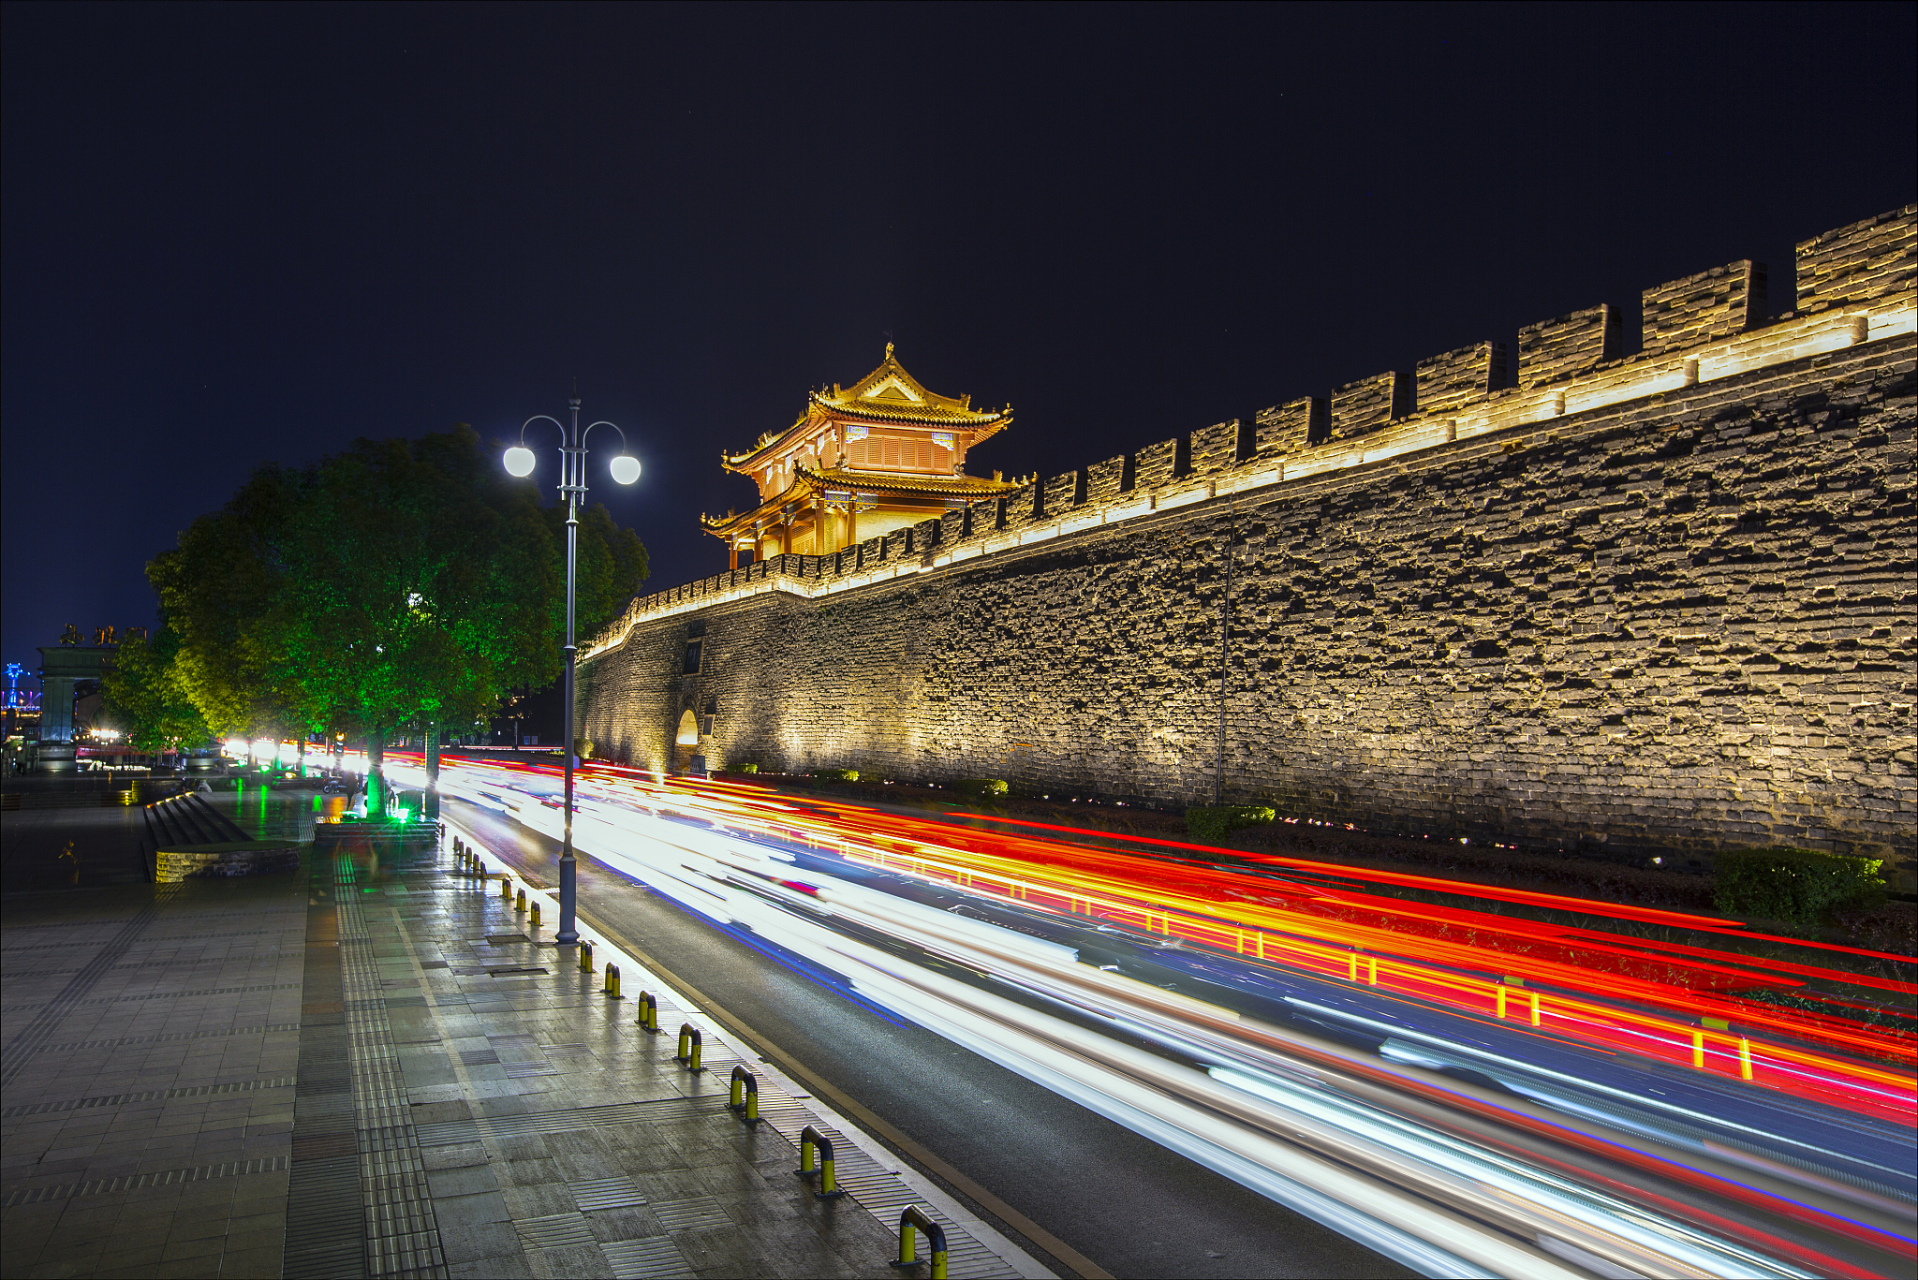 荆州古城夜景图片